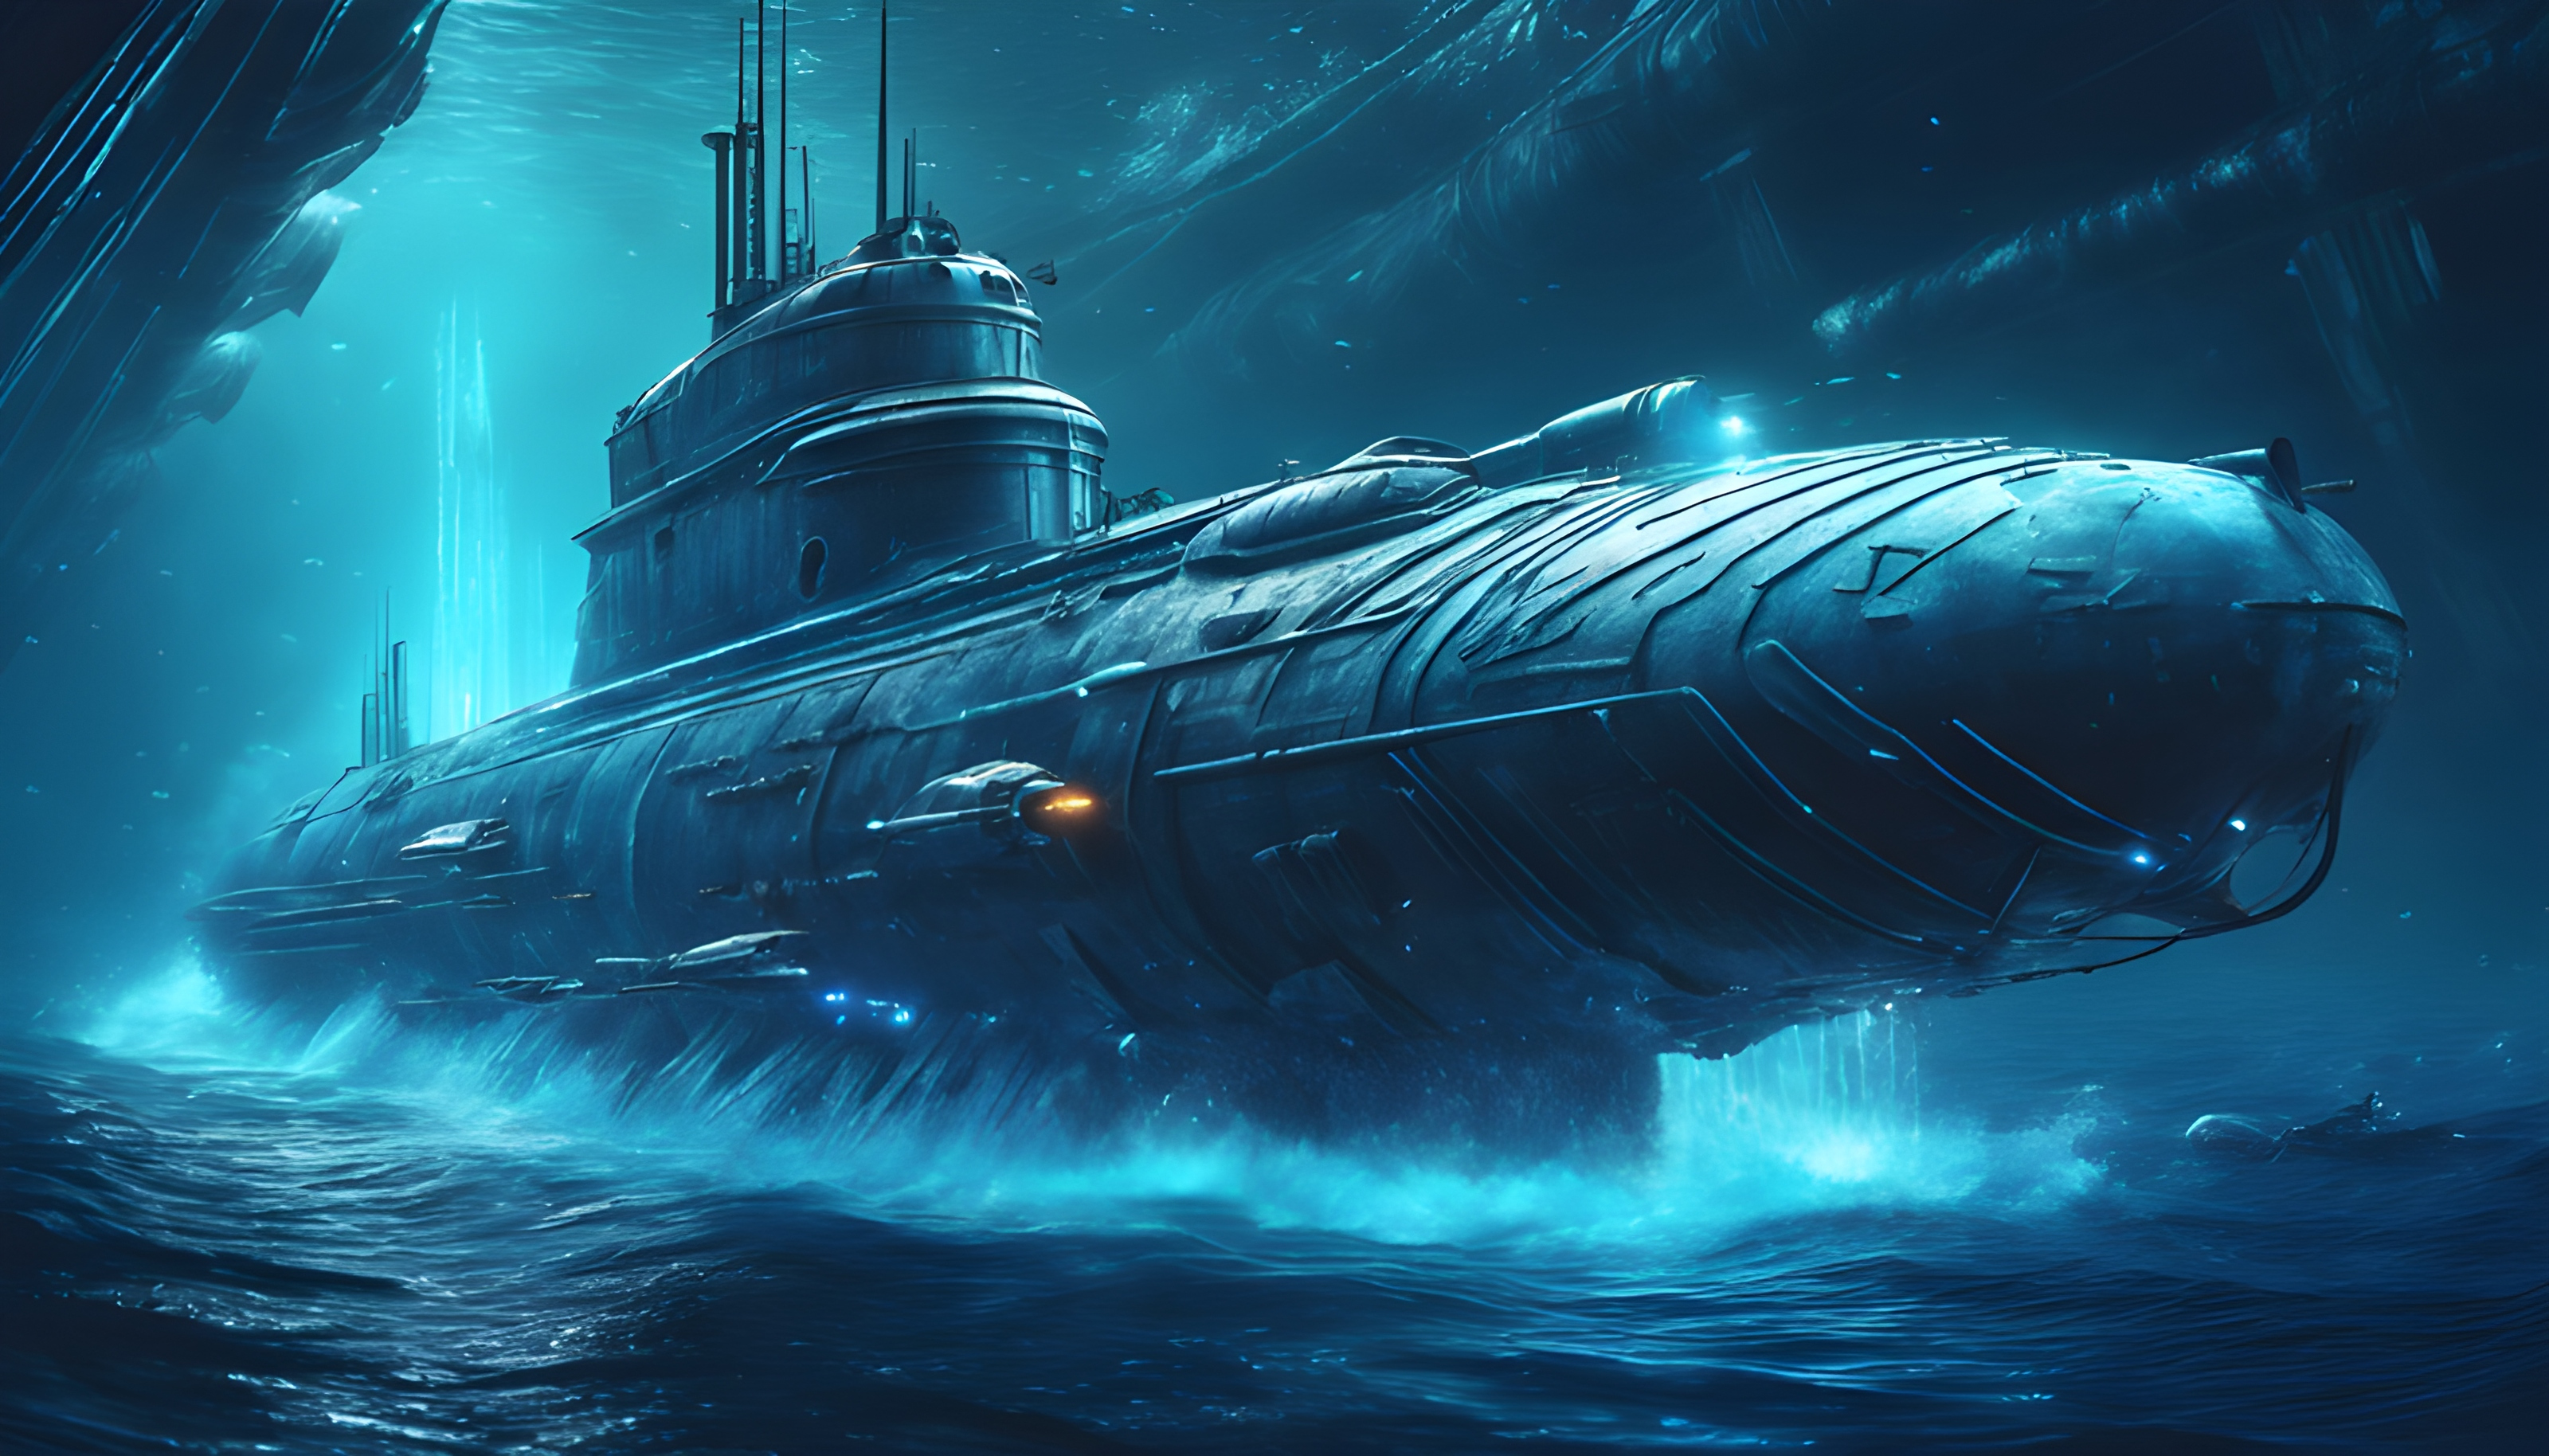 สร้างภาพกราฟฟิคเกมต่อสู้เรือดำน้ำใต้ทะเล ธีมทหาร ฉากหลังเรียบๆ สีฟ้า